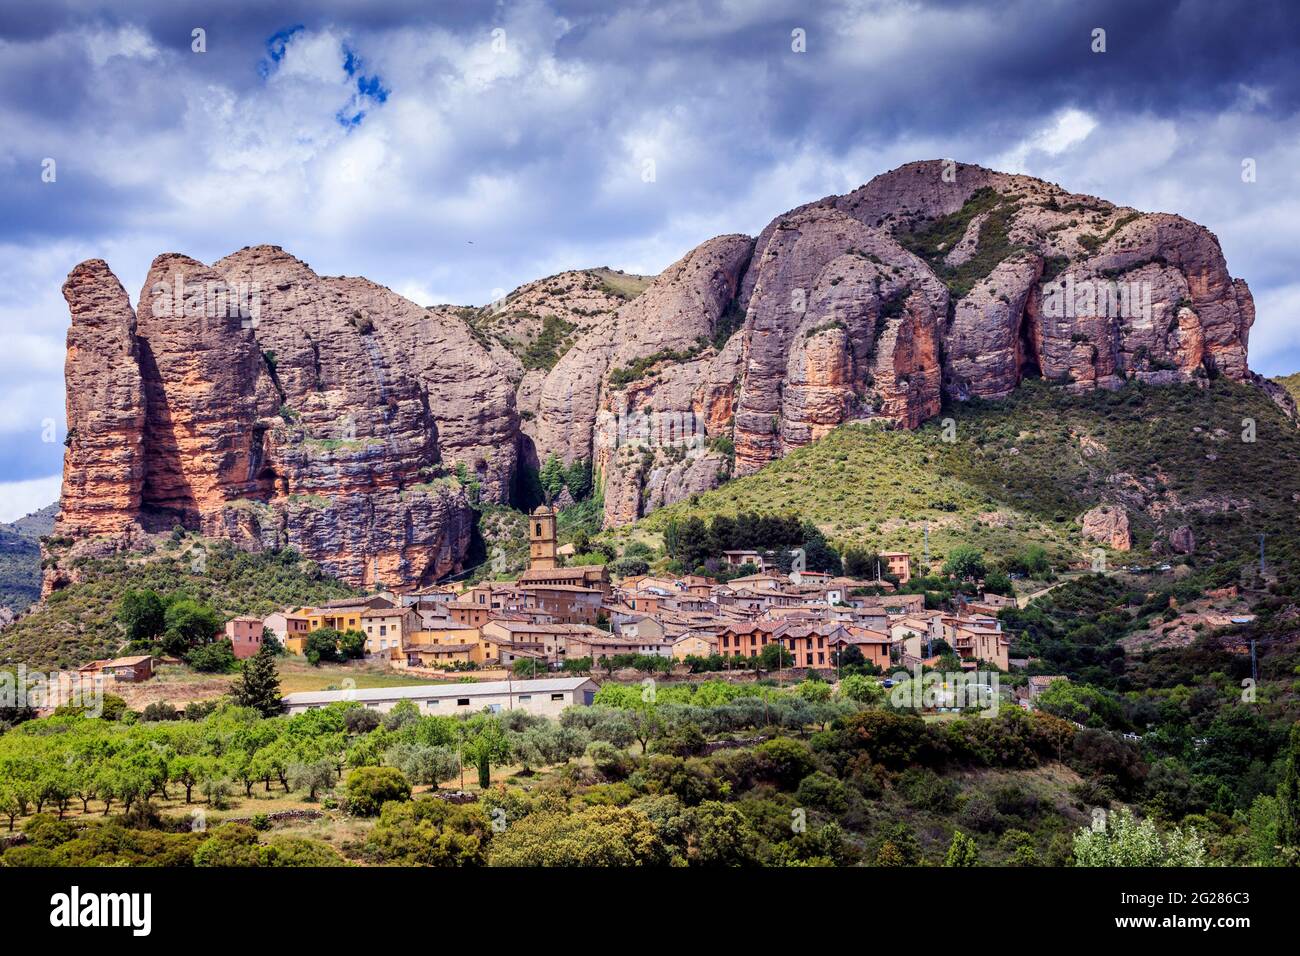 Il Mallos de Aguero si trova dietro il villaggio con lo stesso nome. Impressionanti rocce rosse con pareti verticali, molto apprezzate dagli scalatori. Spagna. Foto Stock